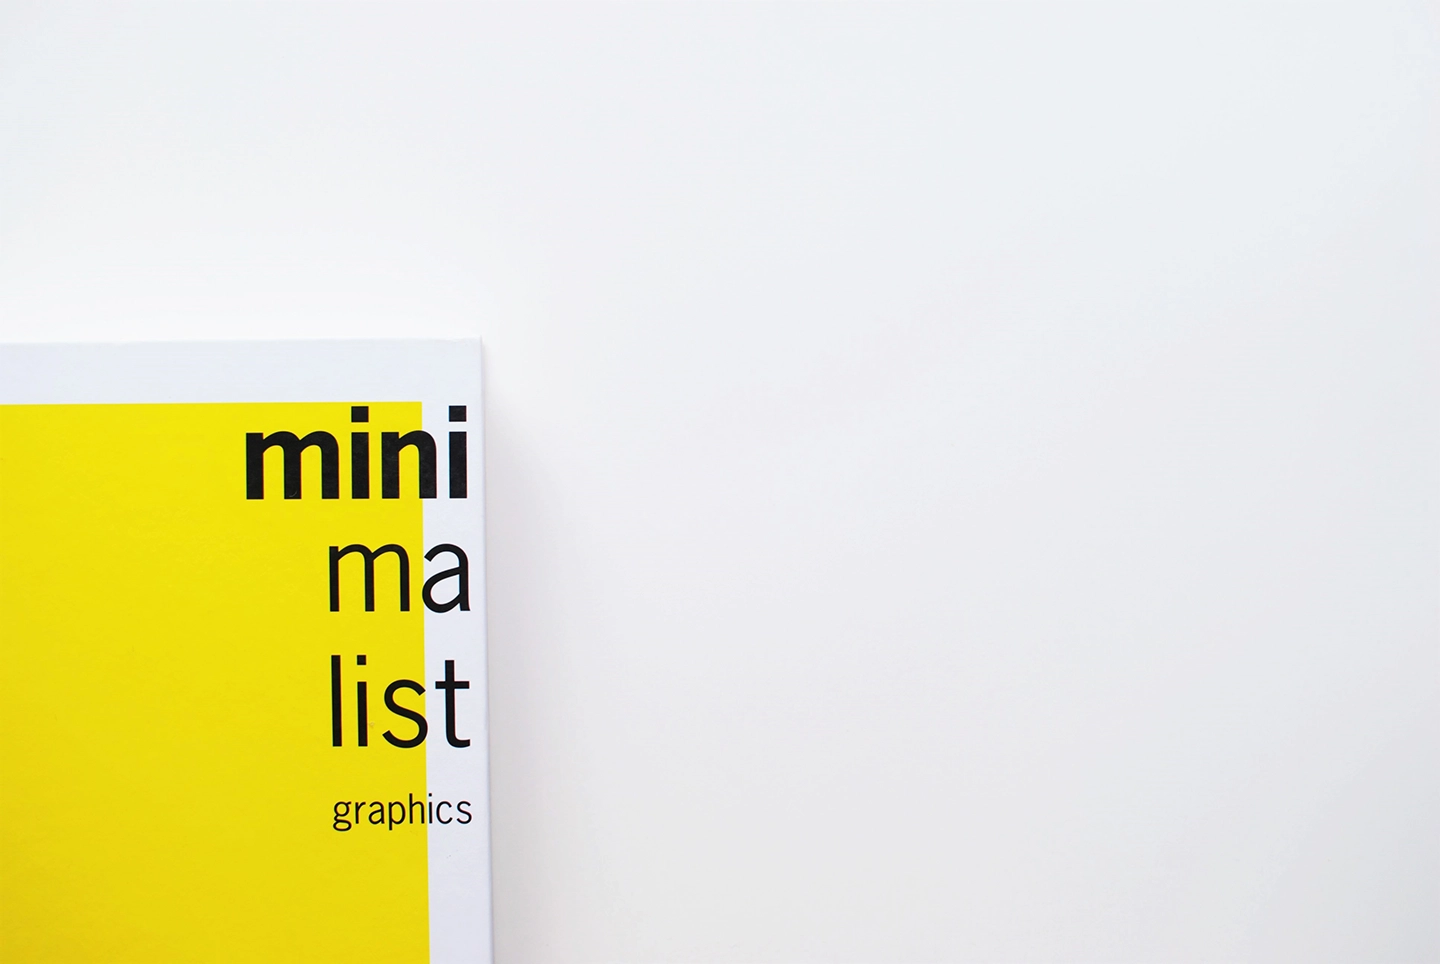 Teilansicht eines Buchcovers mit dem Titel "minimalist graphics" in schwarzer Schrift auf gelbem Hintergrund. Zeigt Arbeit der Mediengestalter:innen.